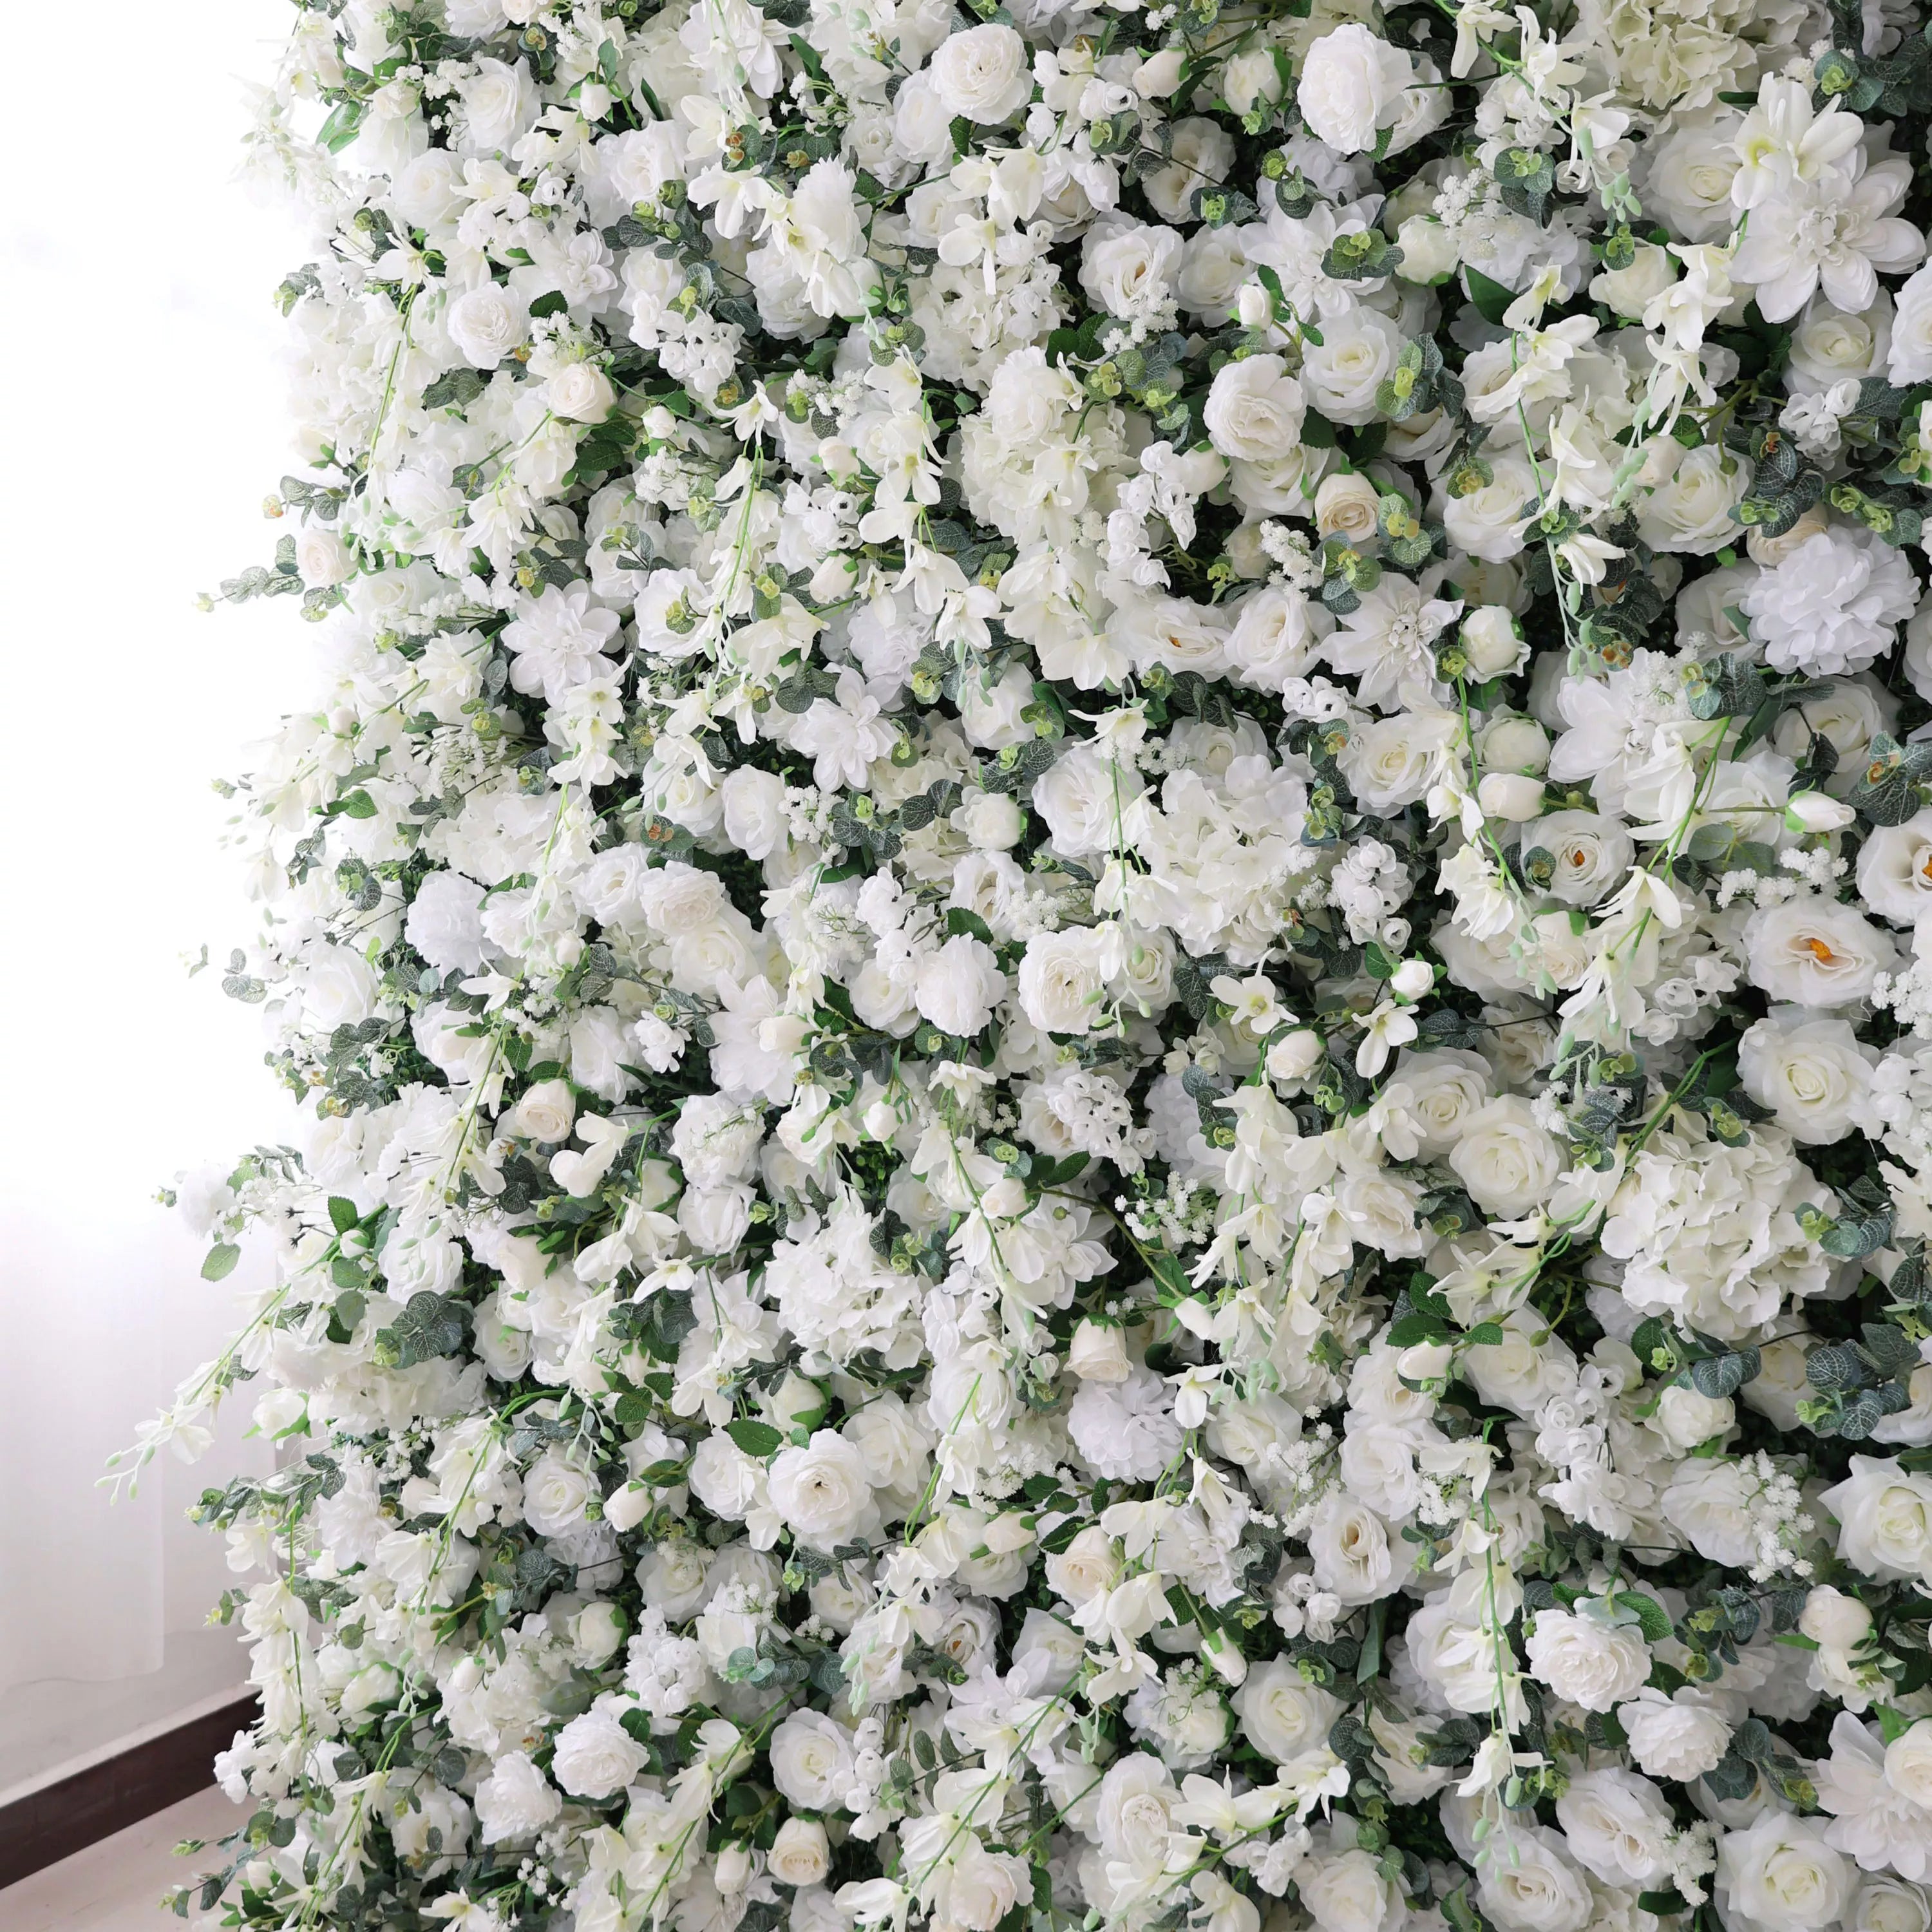 زهور فالار جدار أزهار أبيض أثيري مع لهجات خضراء ناعمة: مثالي للمناسبات الأنيقة &amp; Fall